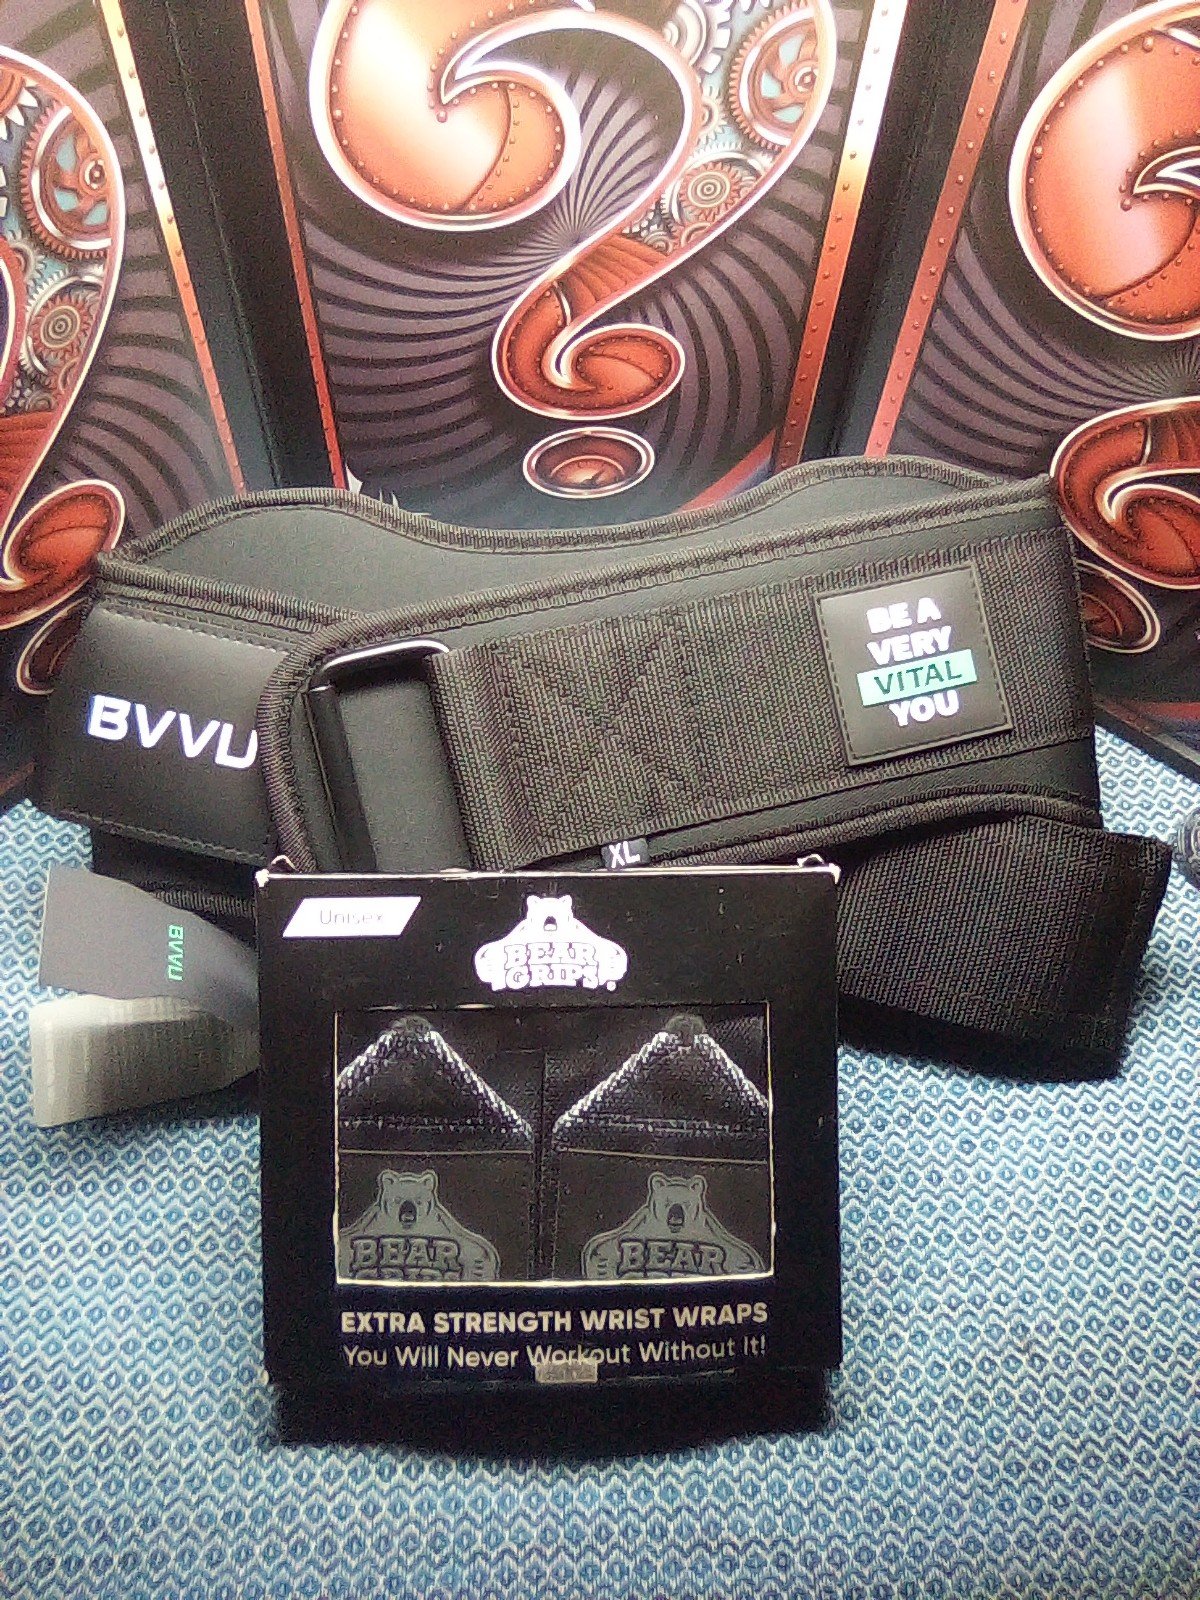 Be A Very Vital You BVVU Weight Lifting Belt & Bear Grips Both New In Box Wth Tg CvRoC9V1f